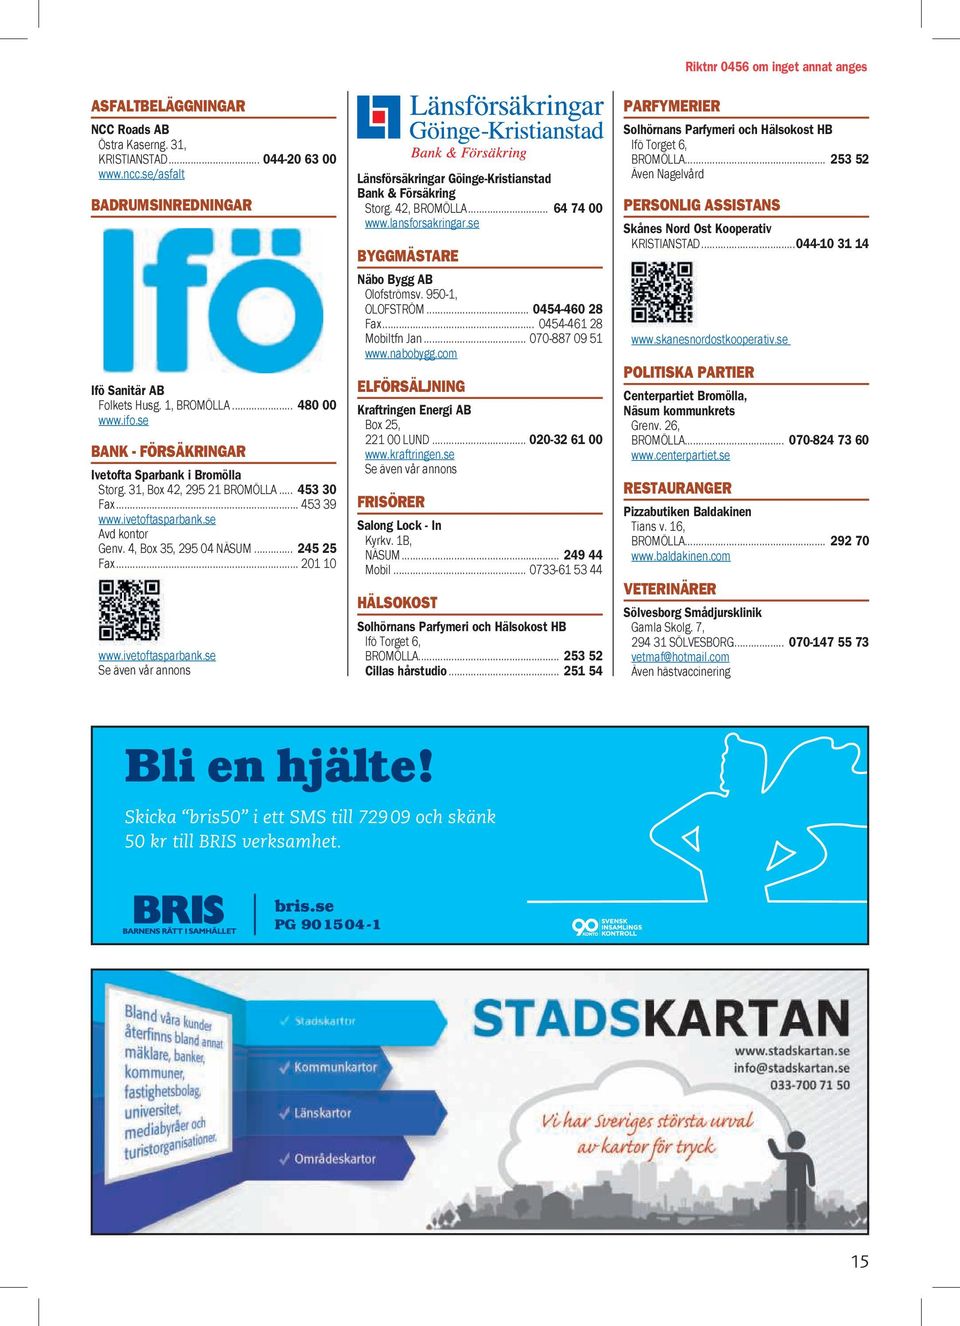 .. 201 10 www.ivetoftasparbank.se Se även vår annons Länsförsäkringar Göinge-Kristianstad Bank & Försäkring Storg. 42, BROMÖLLA... 64 74 00 www.lansforsakringar.